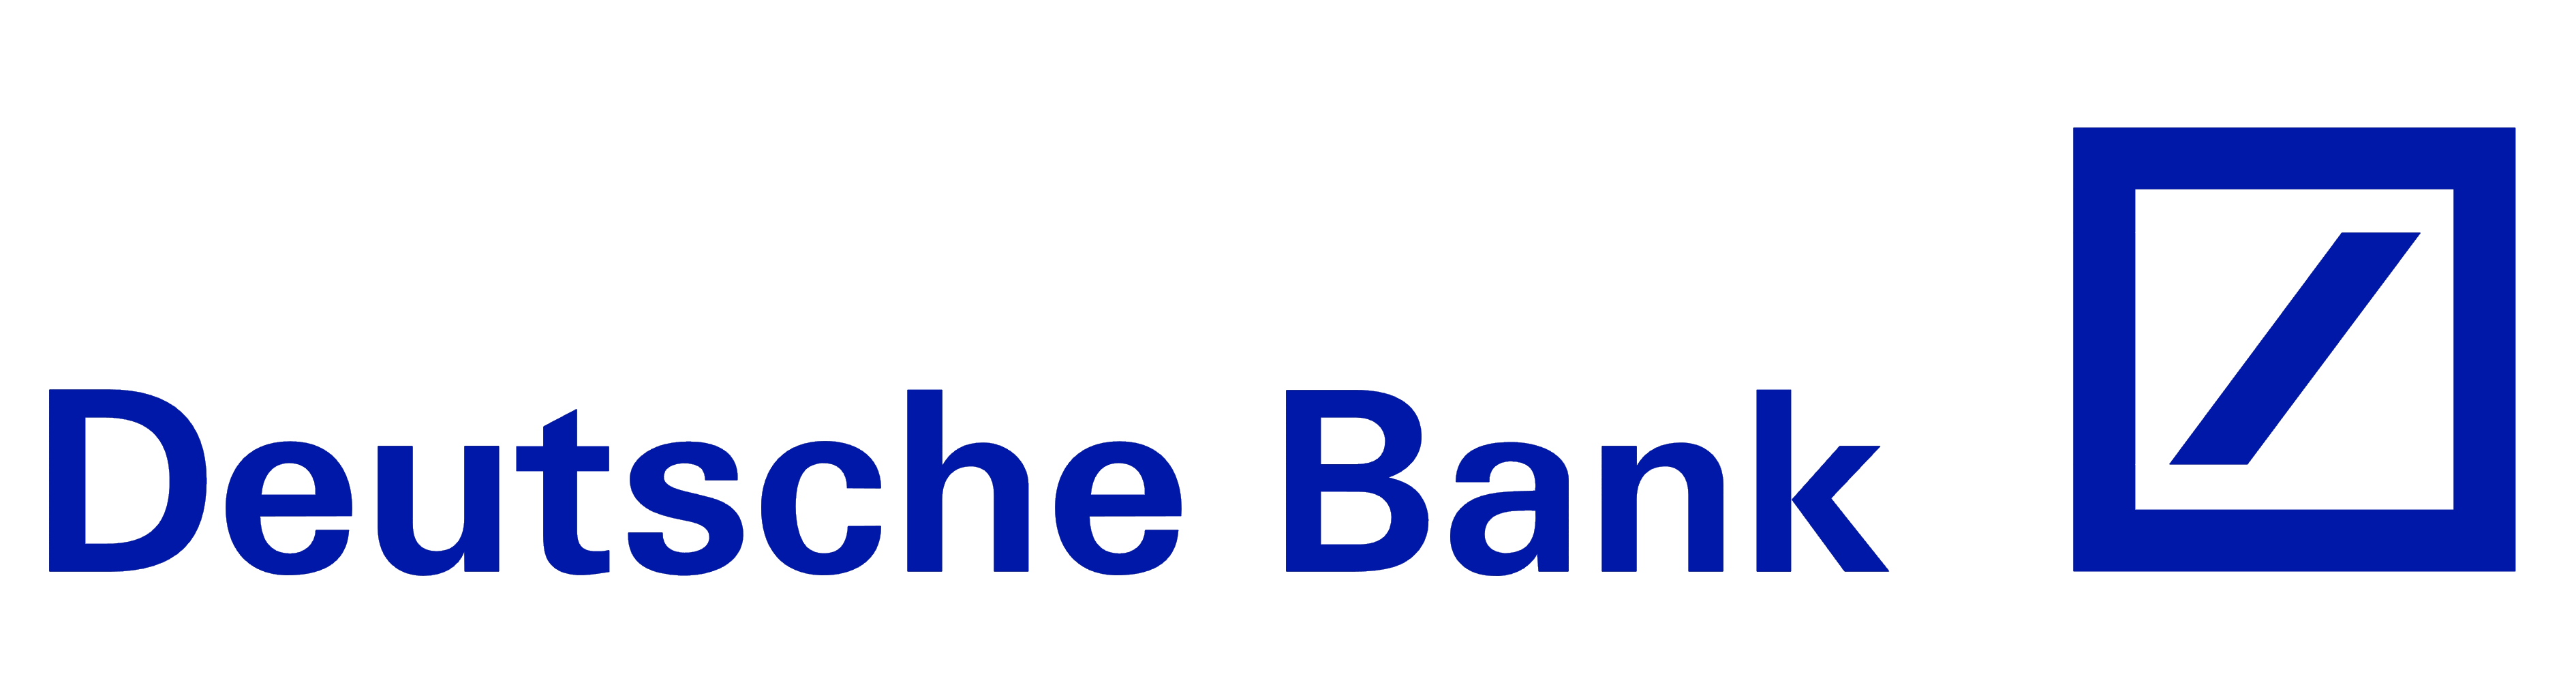 deutschebank (Company Image) 